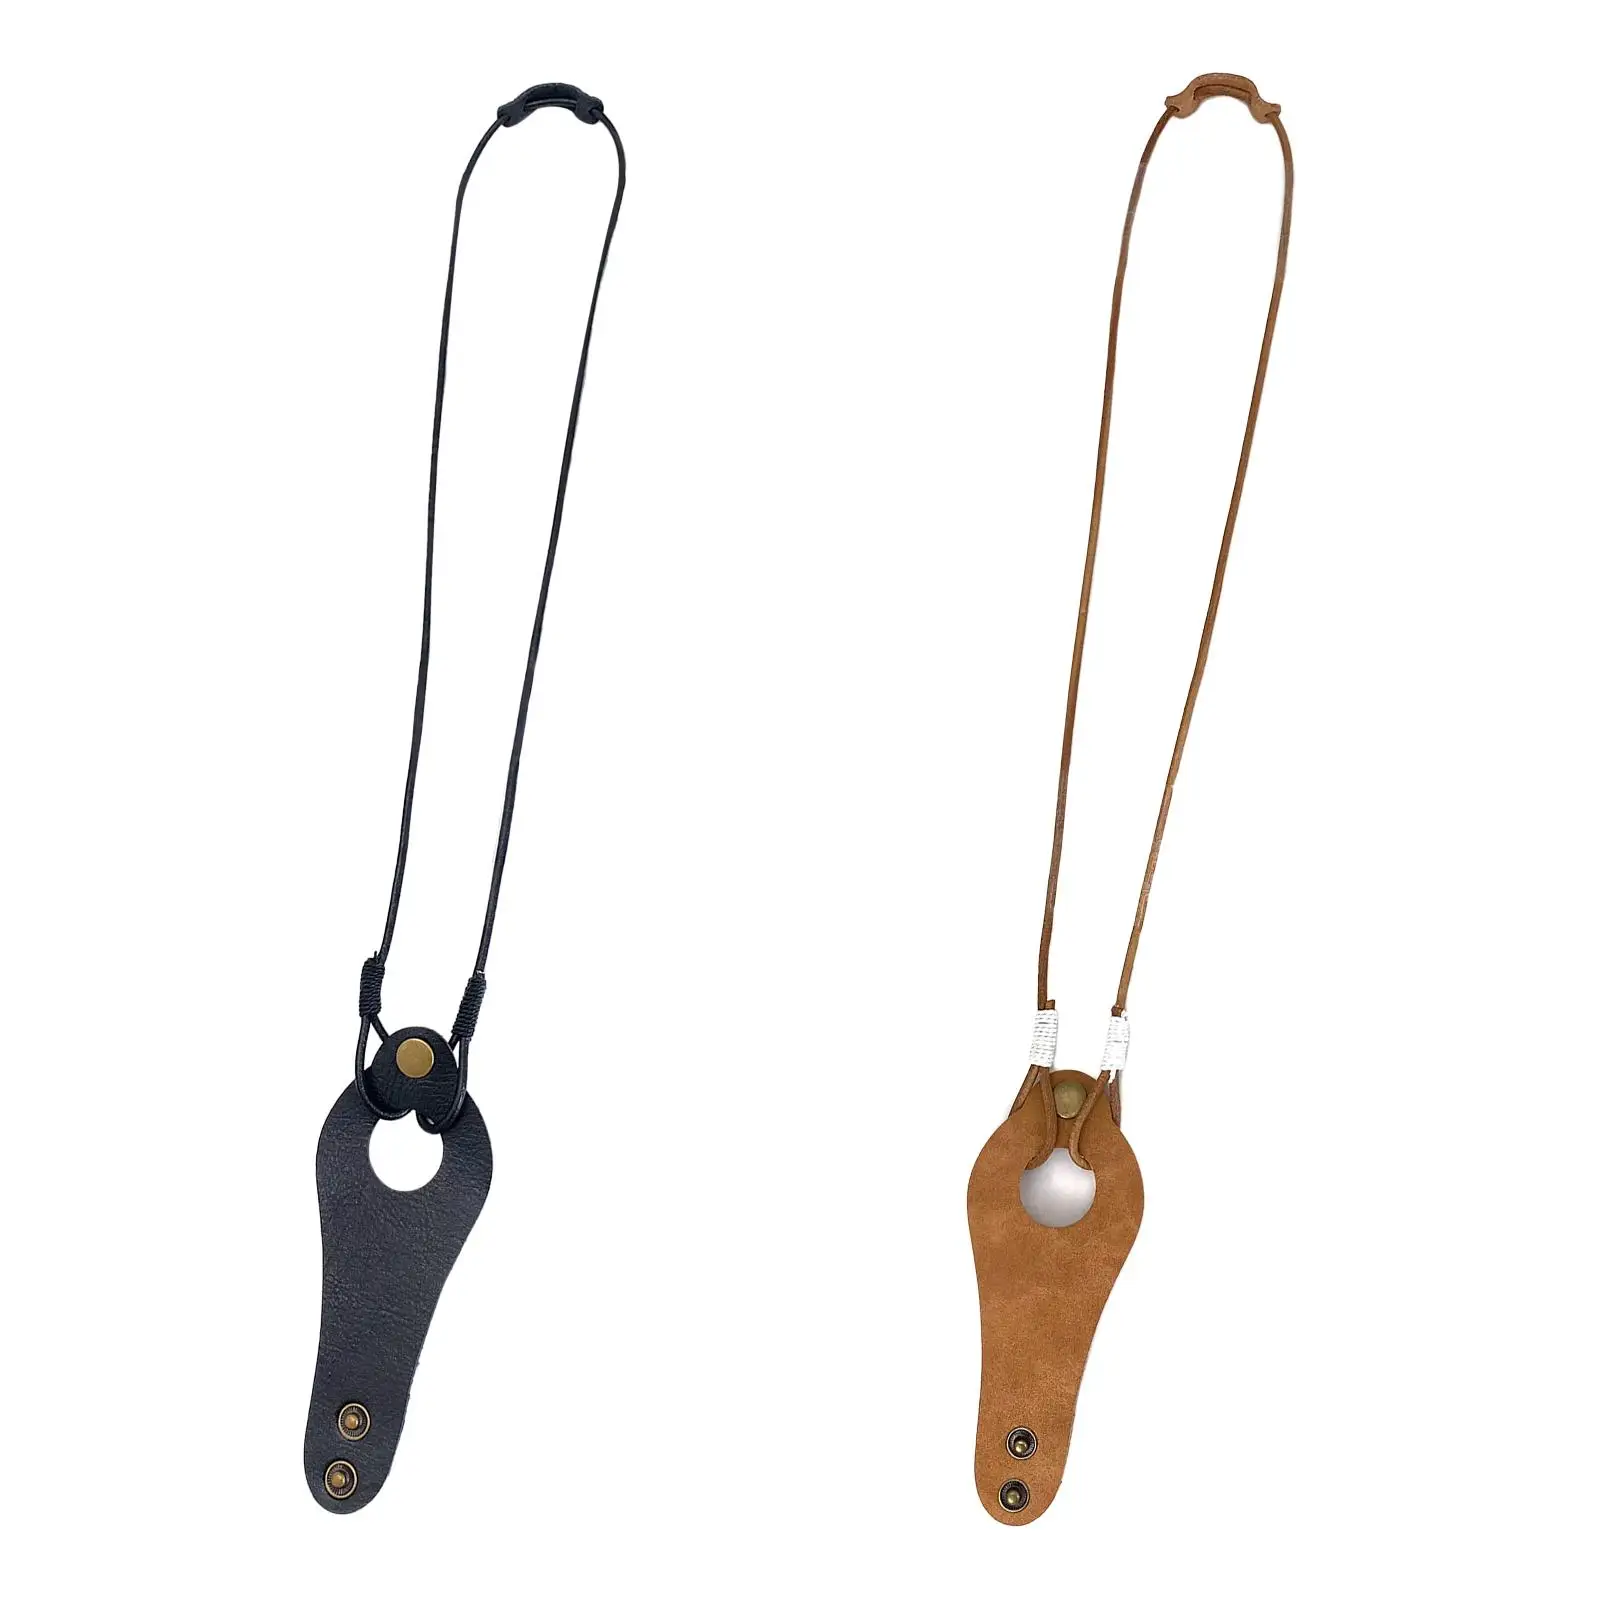 Sunglasses Hanging Neck Strap PU Leather Adjustable for Men Women Anti Slip Eyewear Retainer Eyewear Clip Lanyard for Hiking